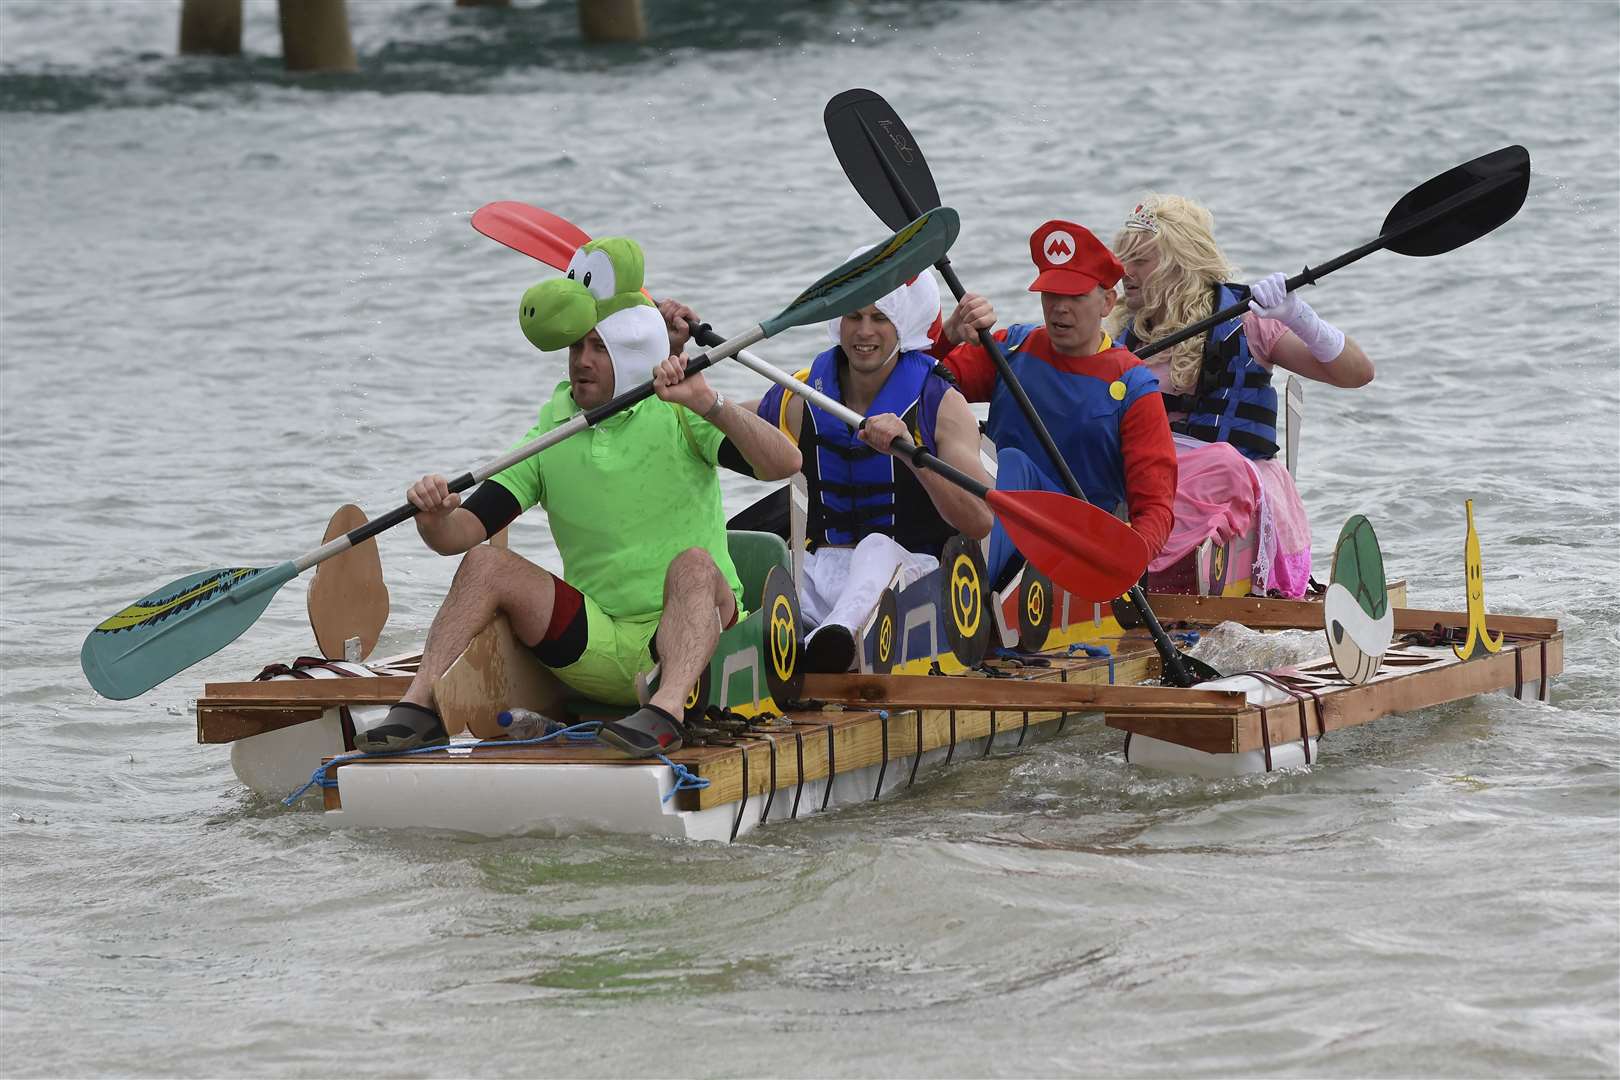 Fancy dress is a must for the raft race